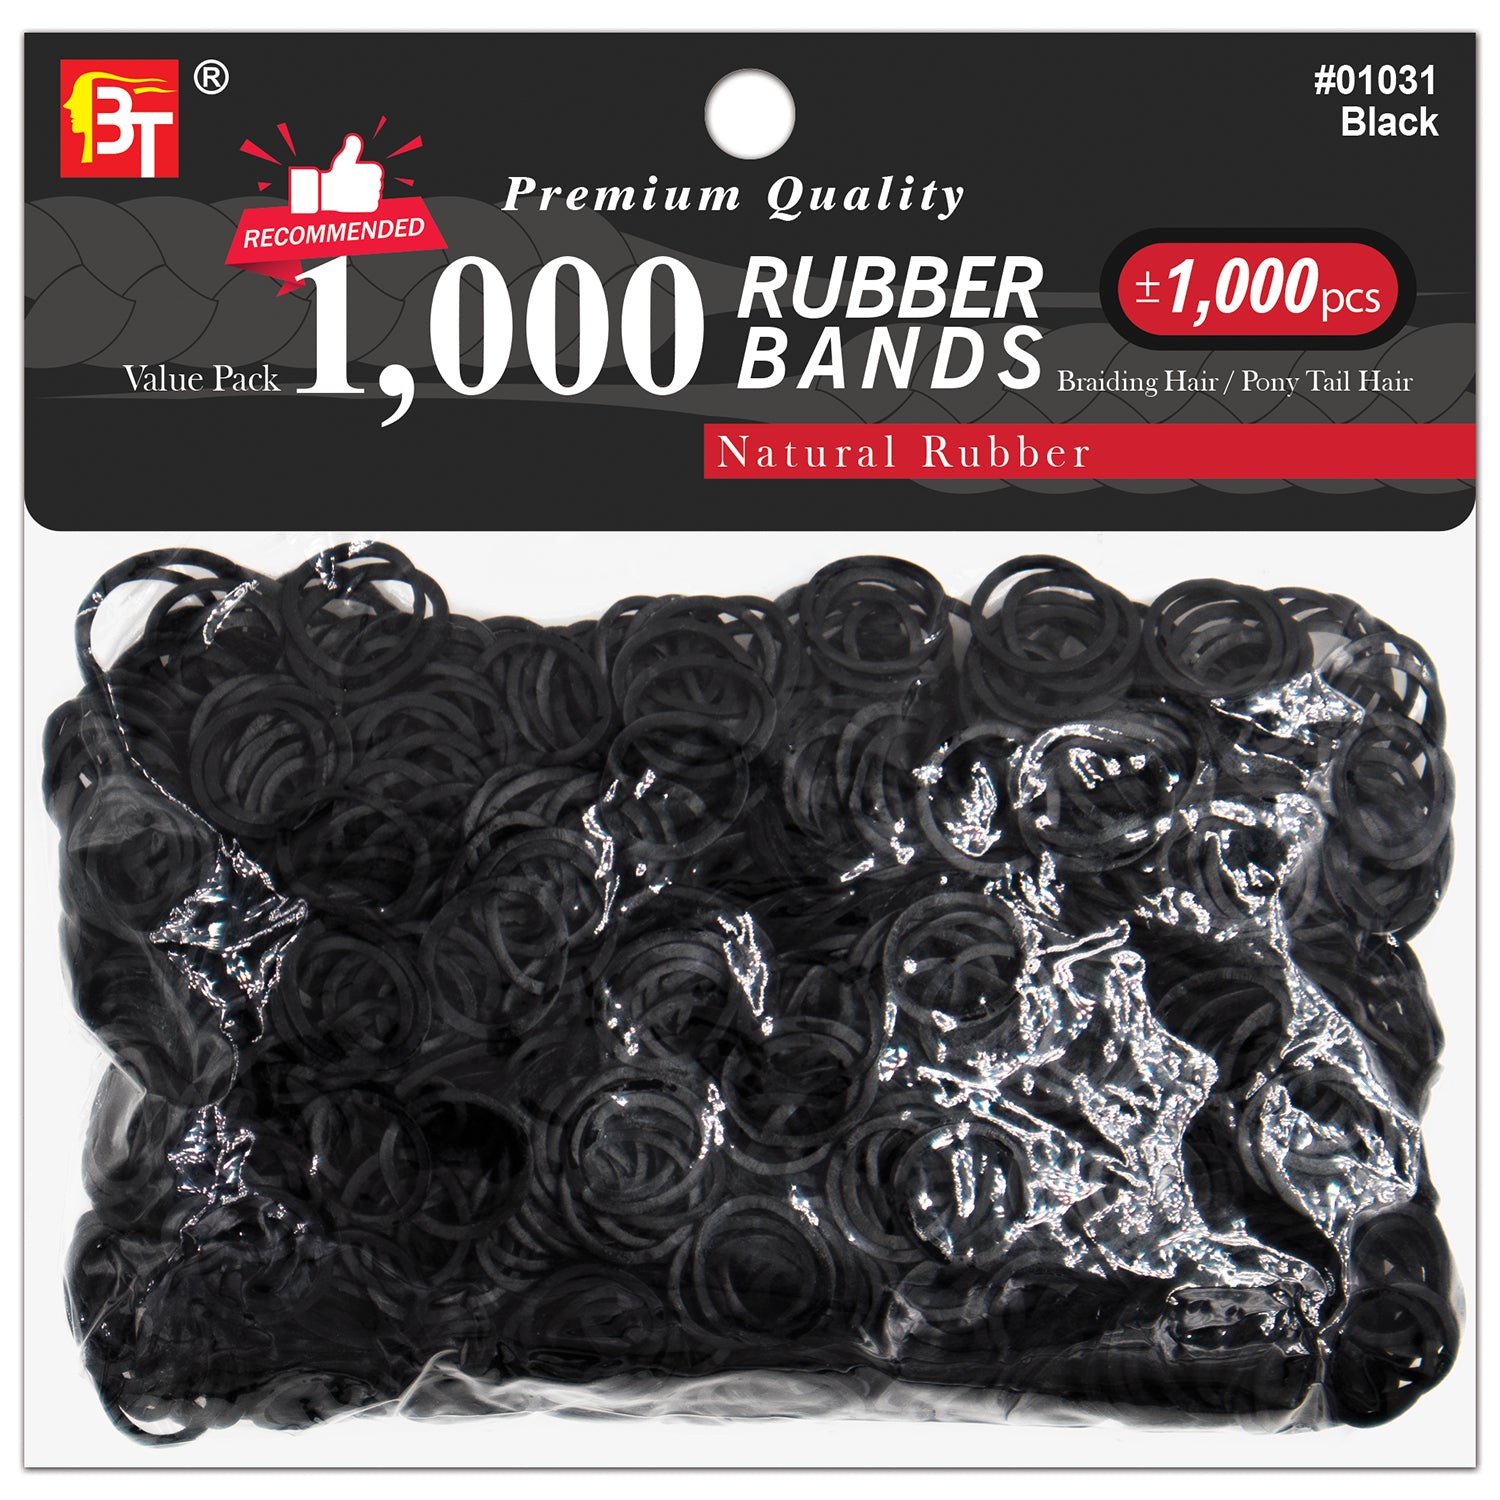 Natural Rubber Bands Value Pack - Black